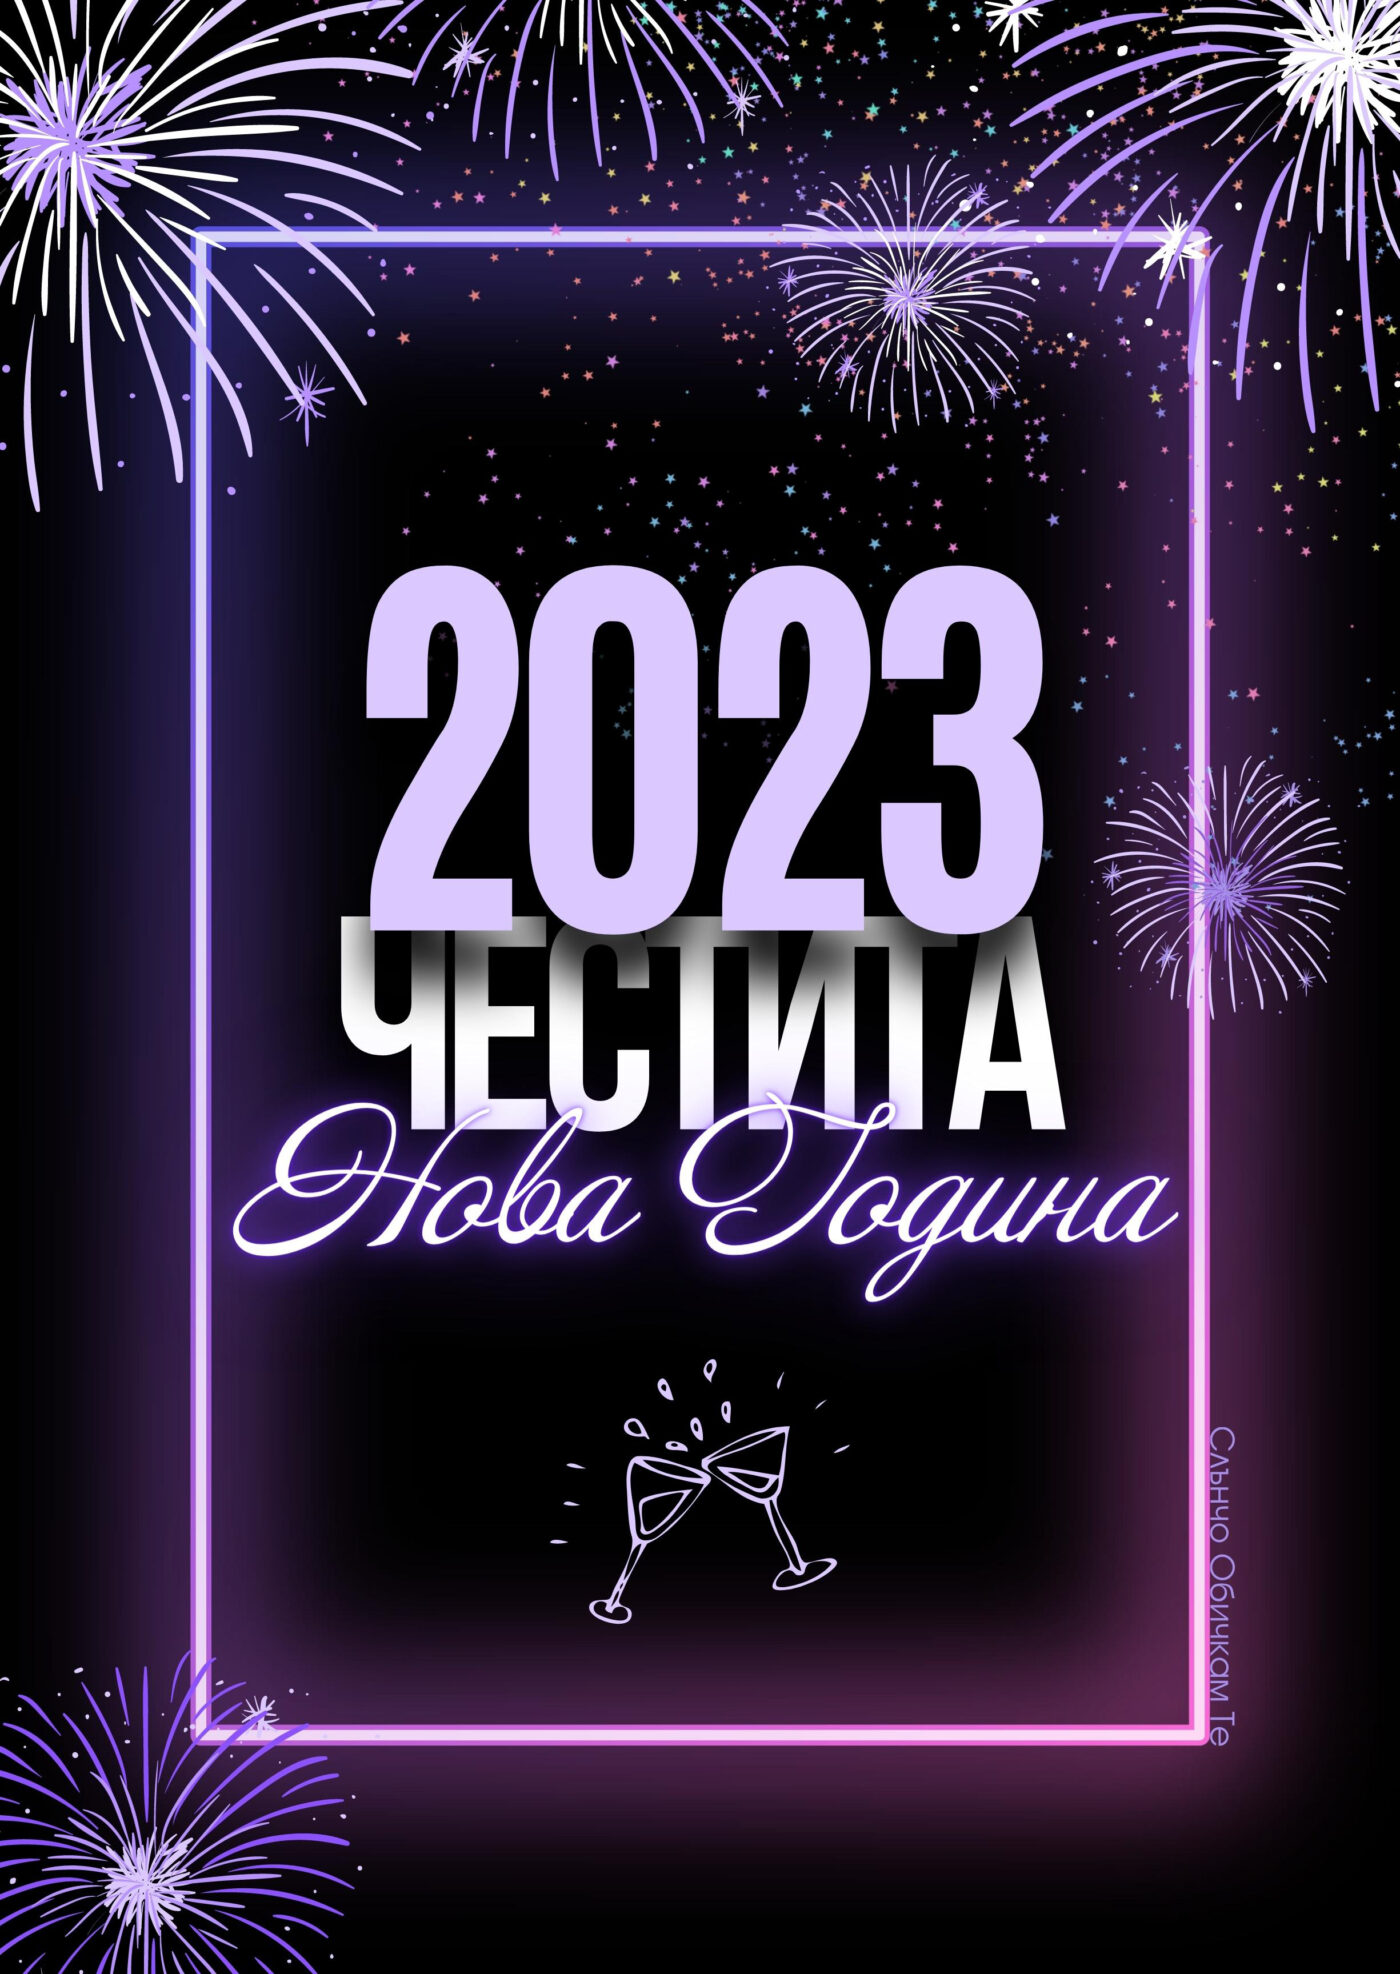 Честита Нова Година 2023 в лилаво - Новогодишни картички, Нова година 2023, честита нова година, картички за нова година 2023, пожелания за нова година, слънчо обичкам те